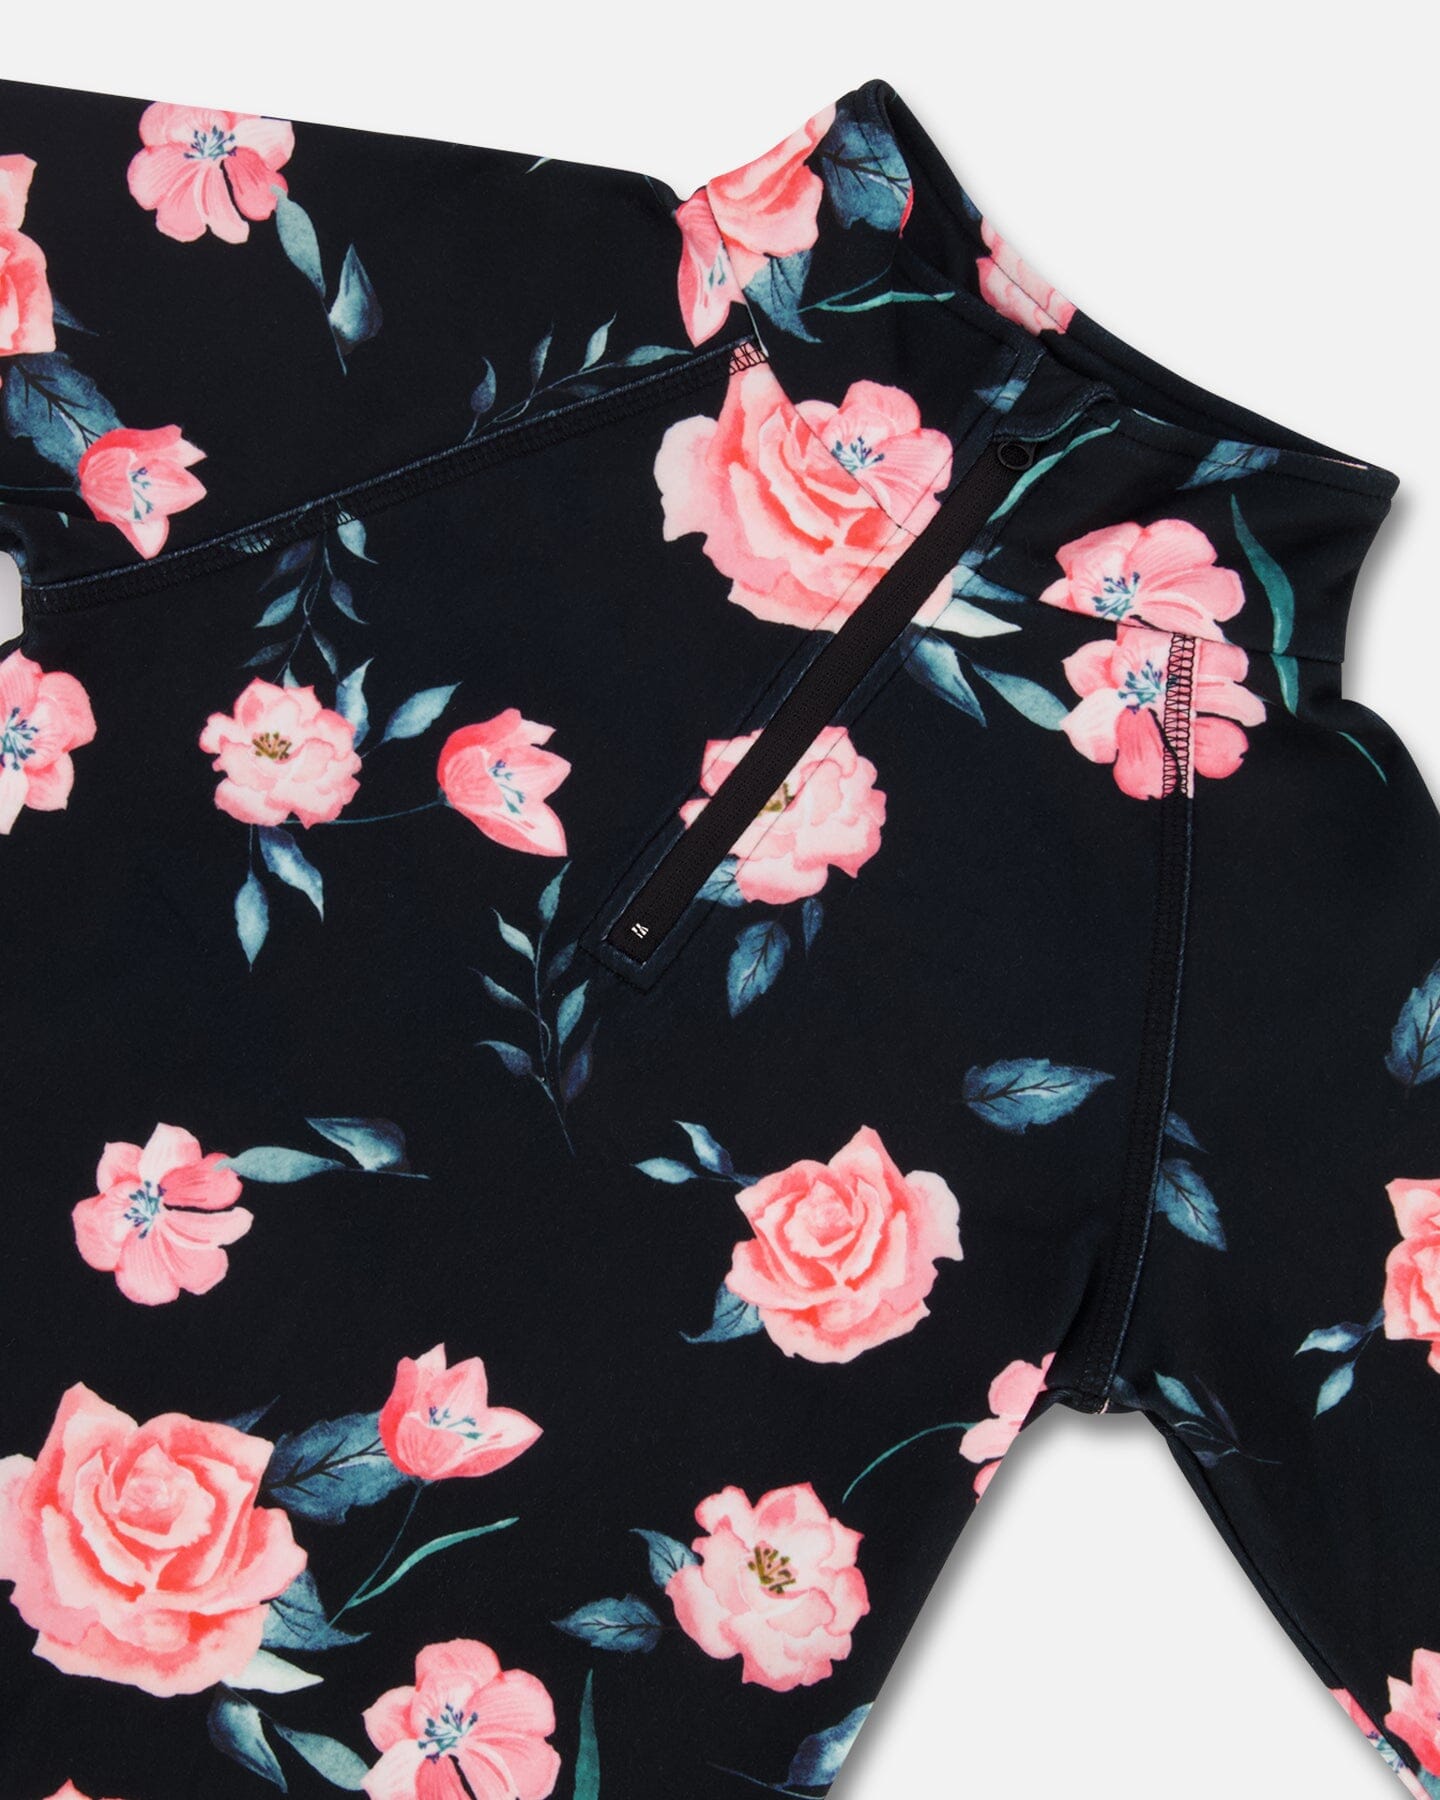 Two Piece Black Thermal Underwear Set With Rose Print Winter Accessories Deux par Deux 